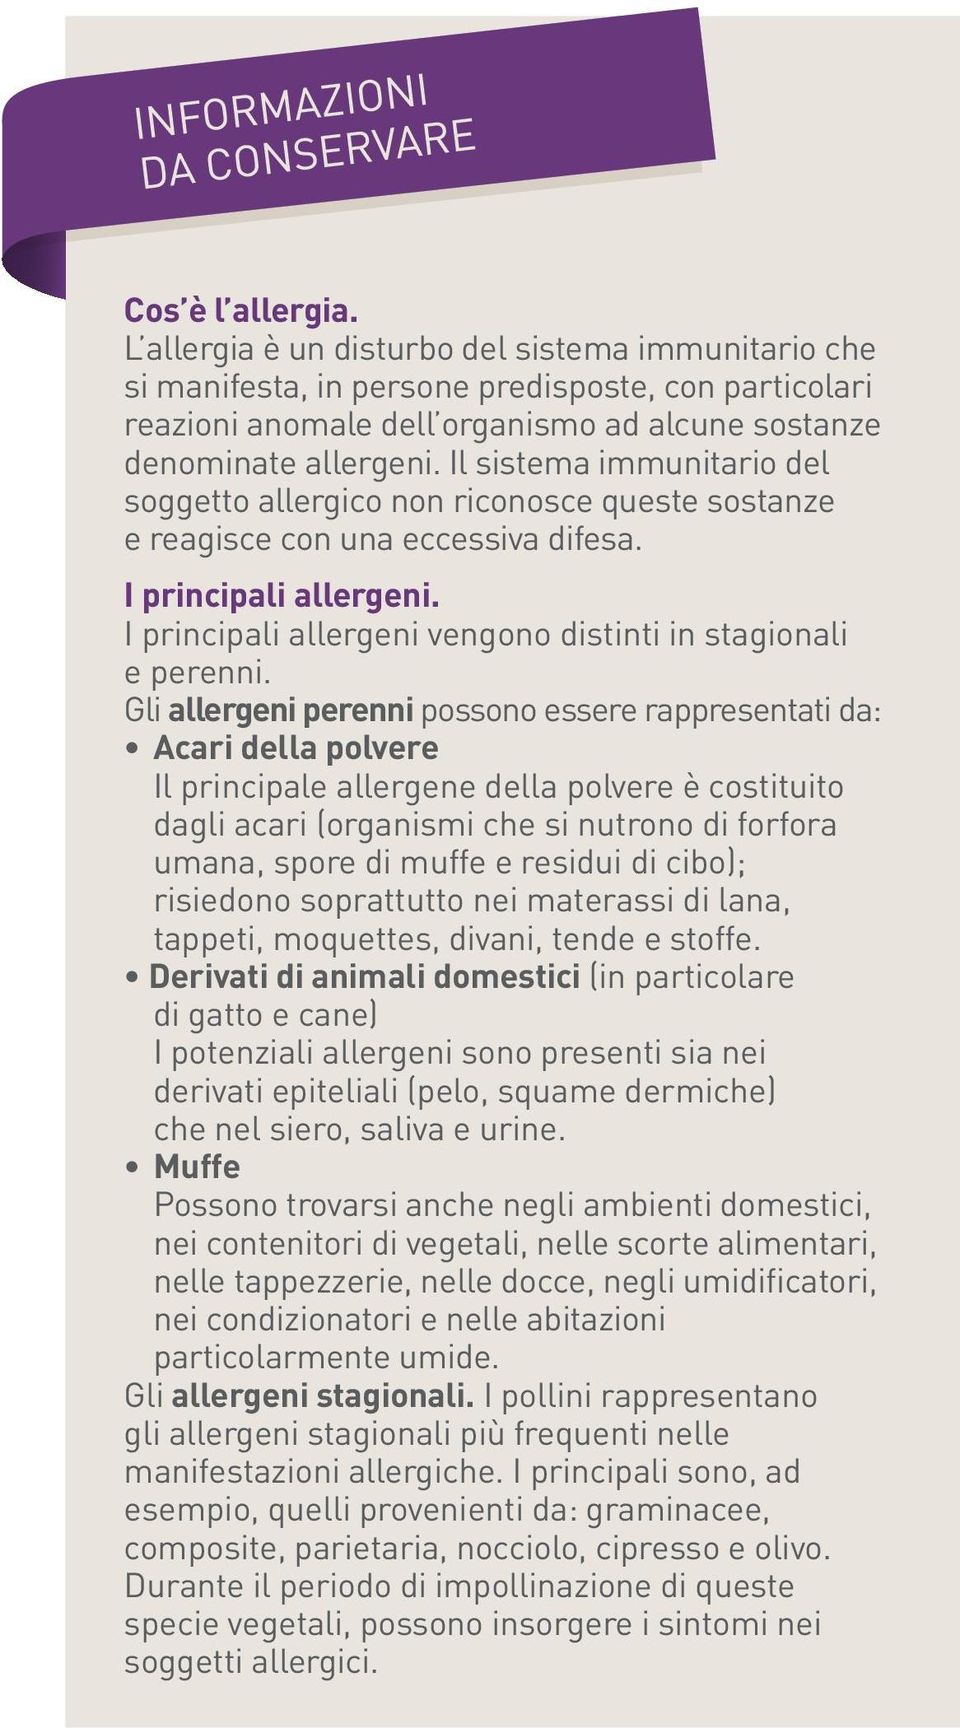 I principali allergeni vengono distinti in stagionali e perenni.